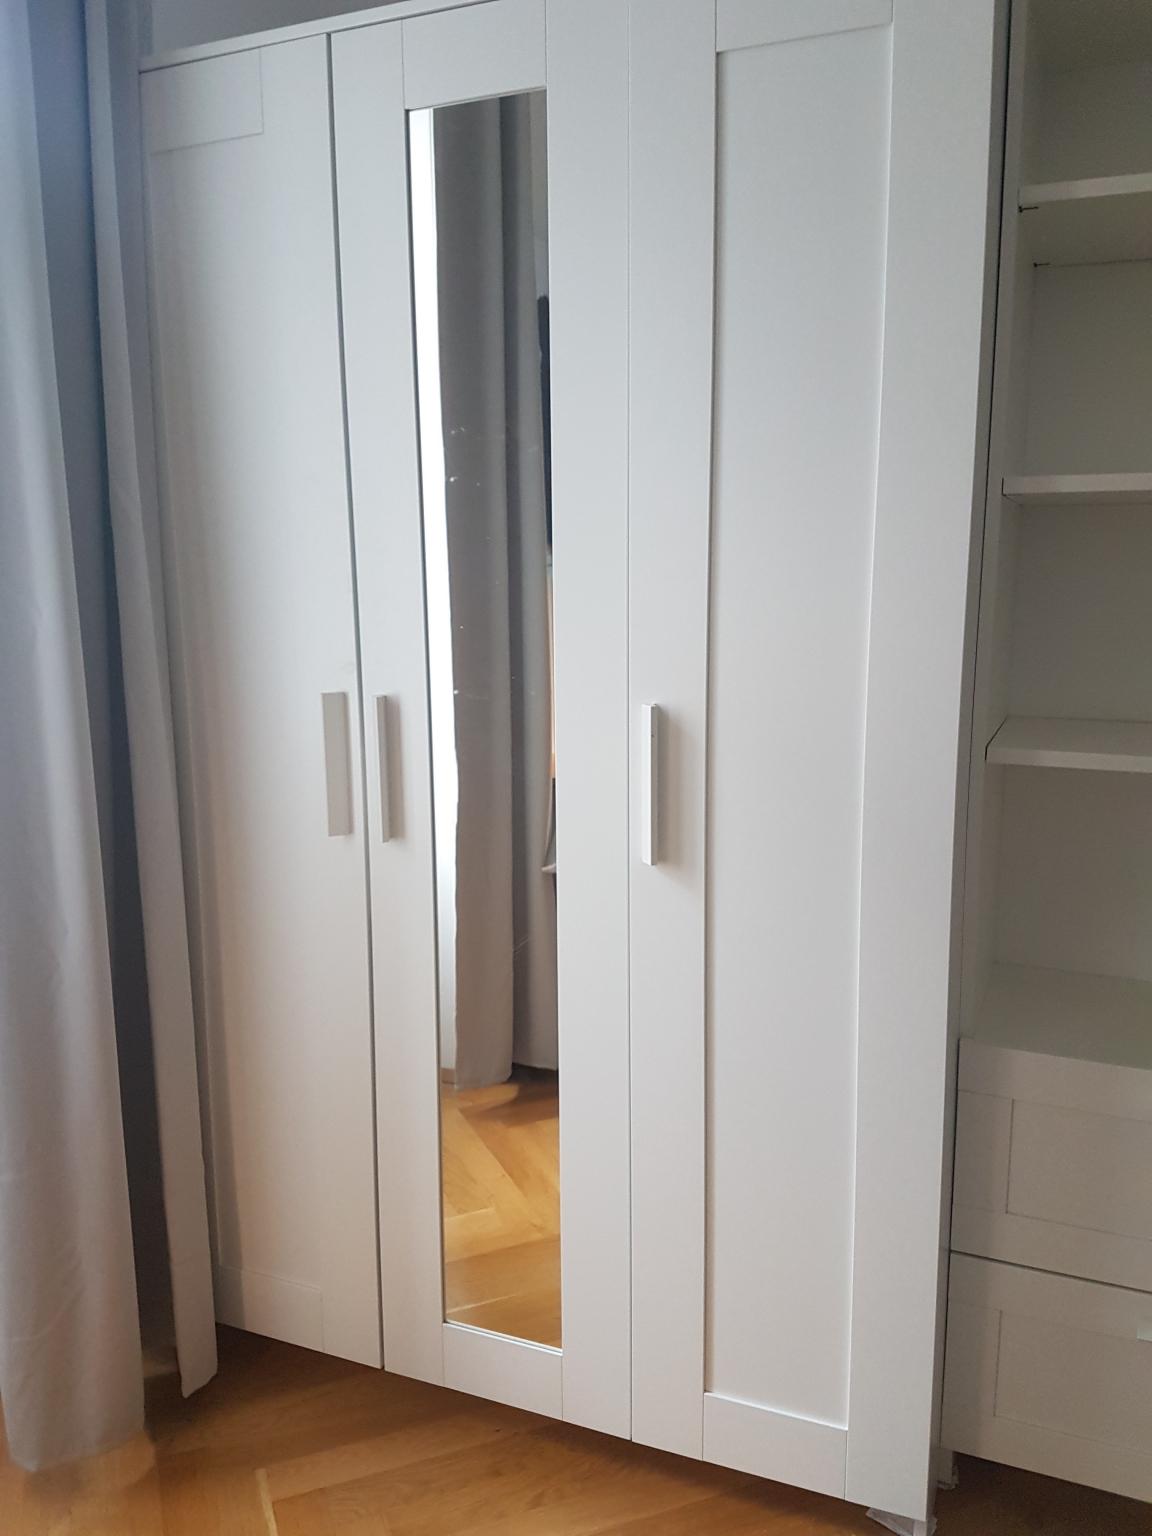 IKEA BRIMNES Kleiderschrank 10-türig, weiß in 10 KG Hernals für